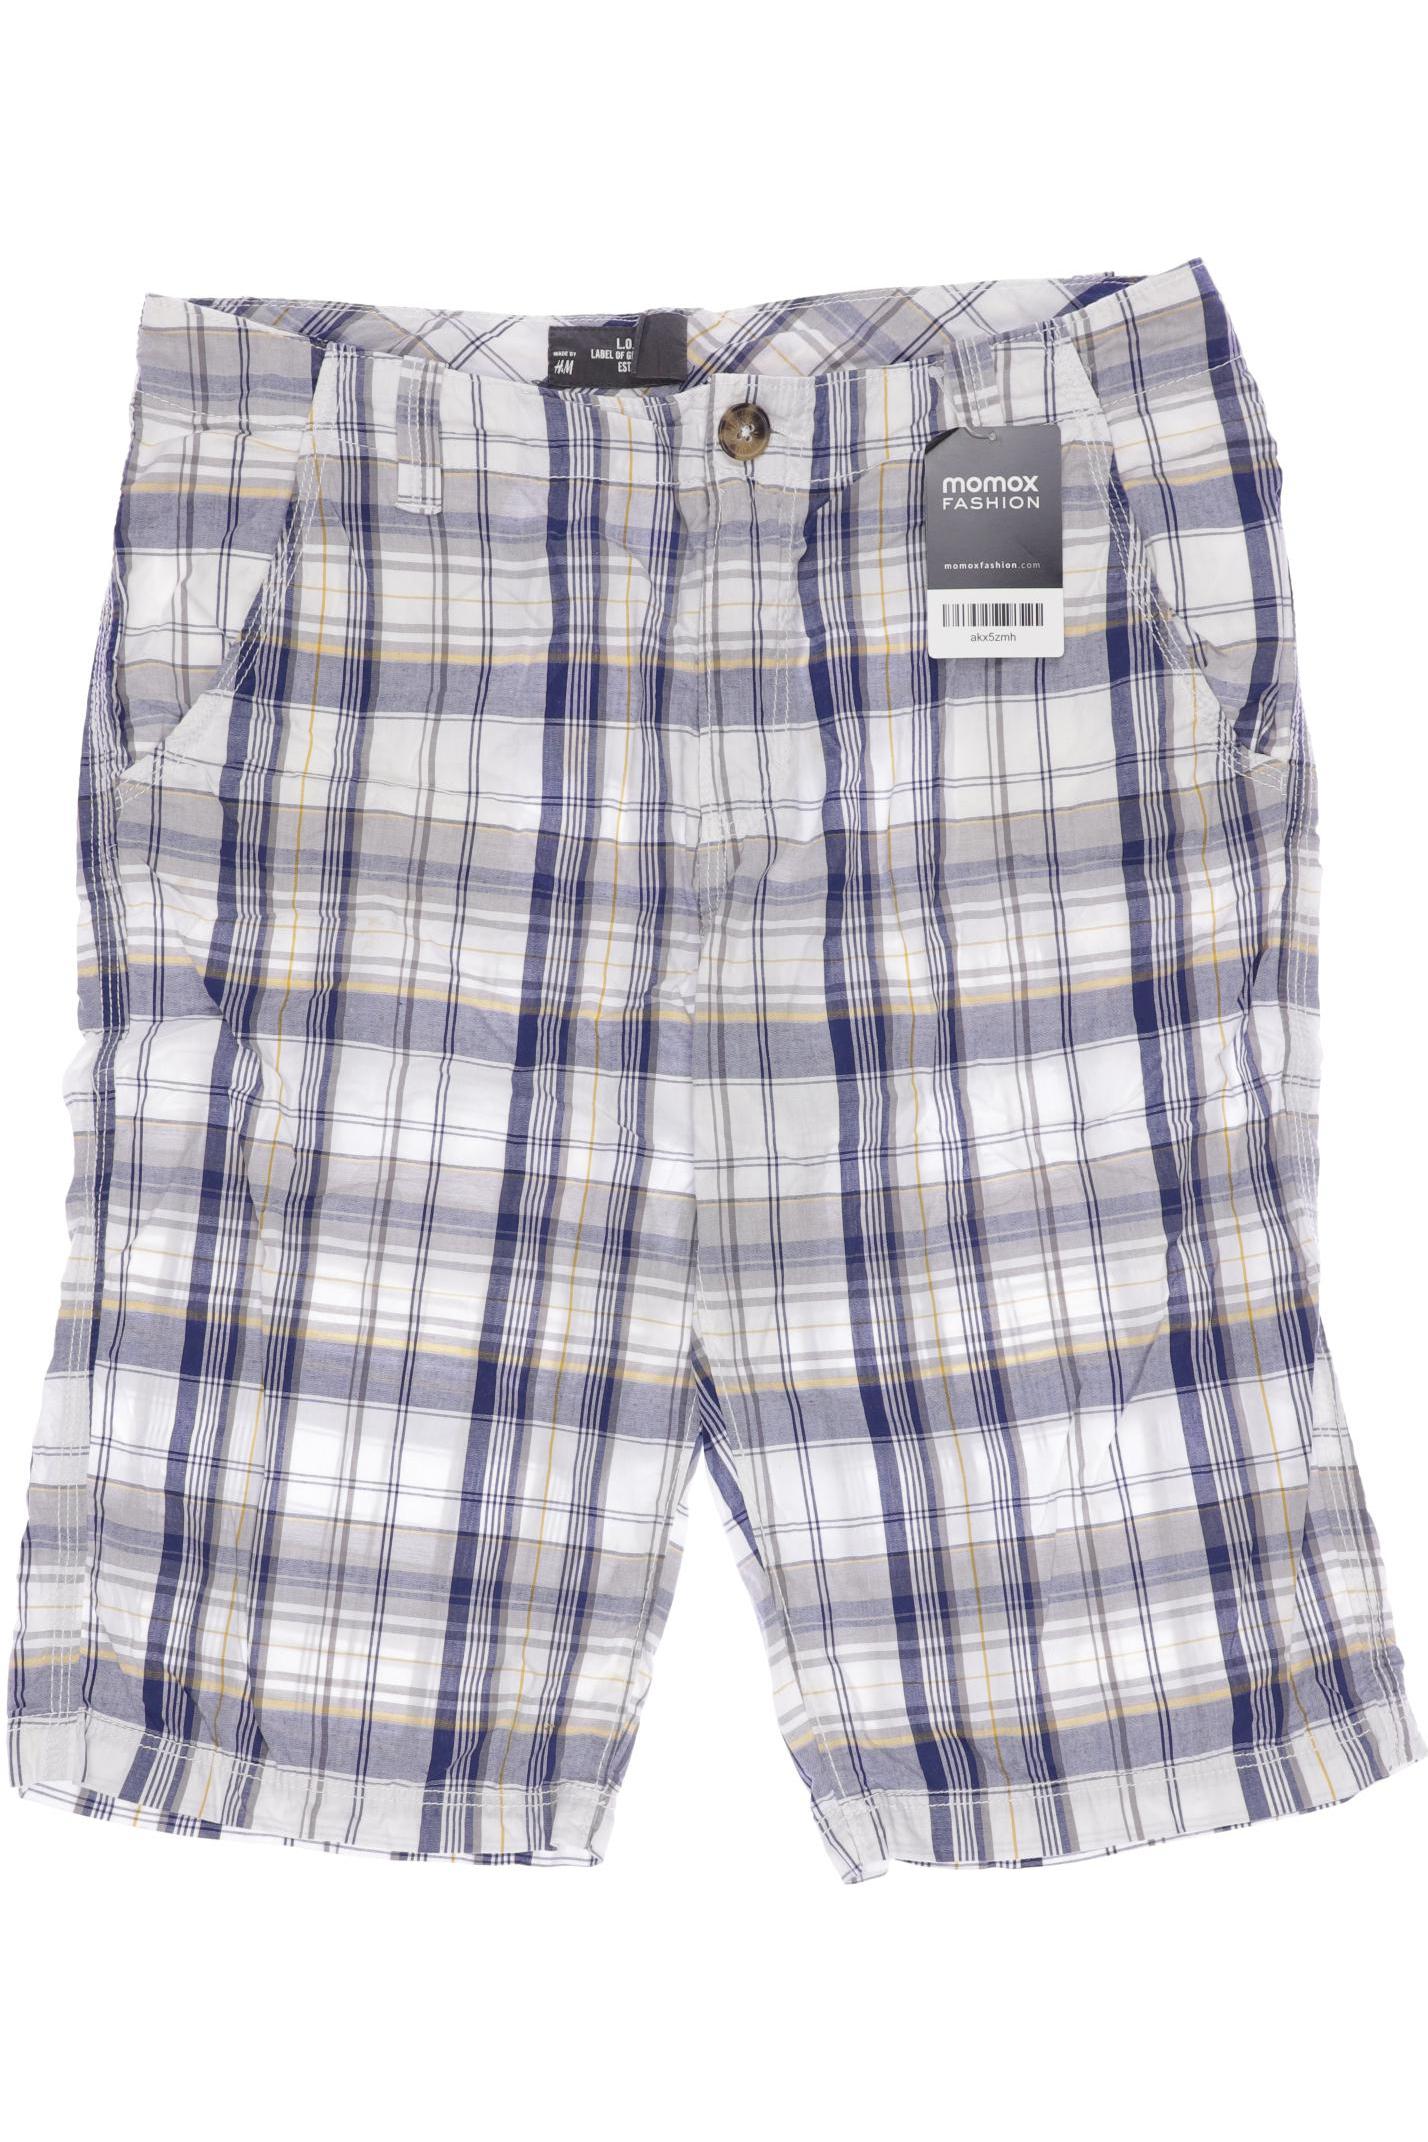 H&M Herren Shorts, blau, Gr. 170 von H&M